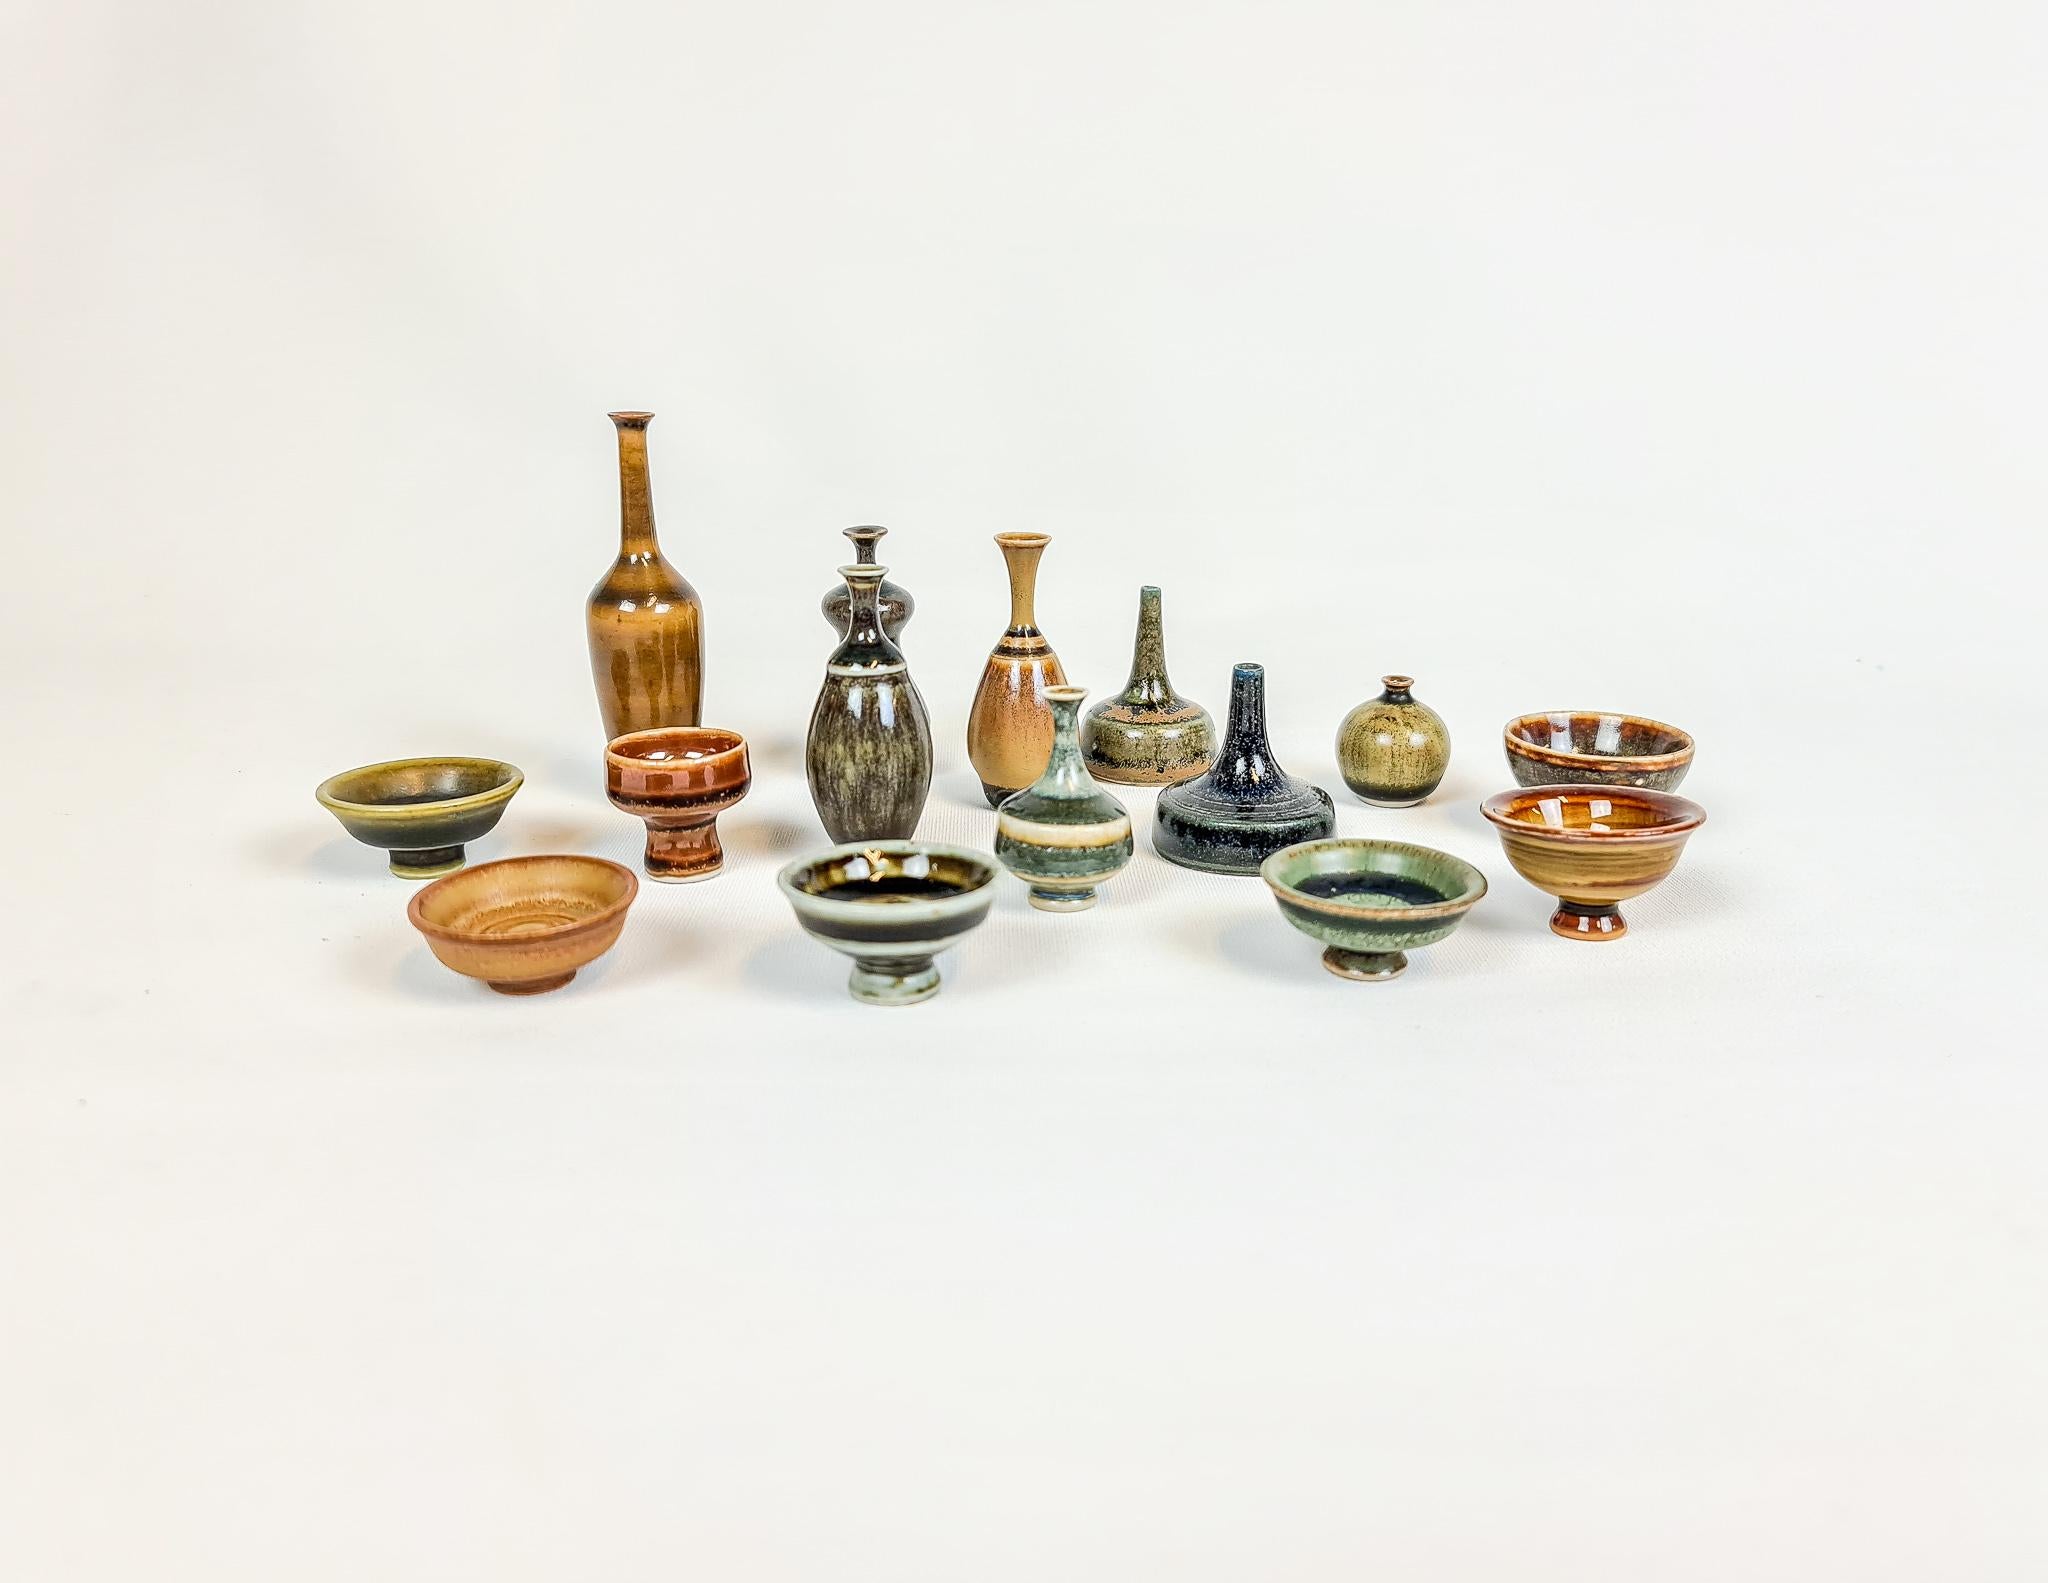 Wunderbare Sammlung von kleinen / Miniatur-Keramiken. Diese sind meist das Werk von John Andersson und werden in Höganäs in Schweden hergestellt. 

Die Skulpturen und Formen sind erstaunlich, ebenso wie die Glasur. 

Maße: H 5-2 cm, T 4-1